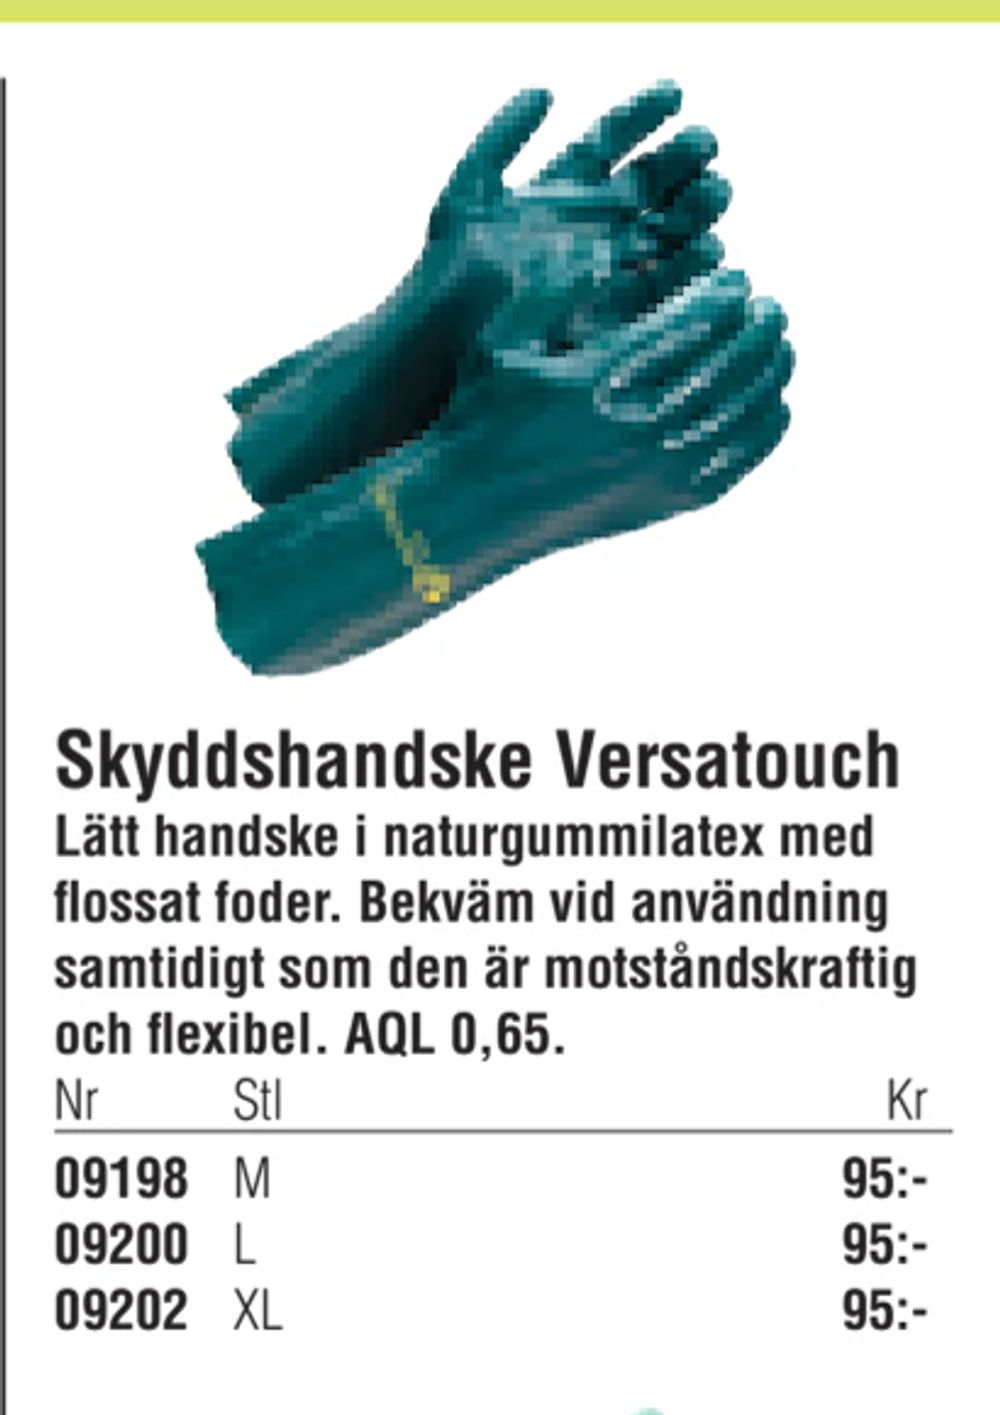 Erbjudanden på Skyddshandske Versatouch från Erlandsons Brygga för 95 kr